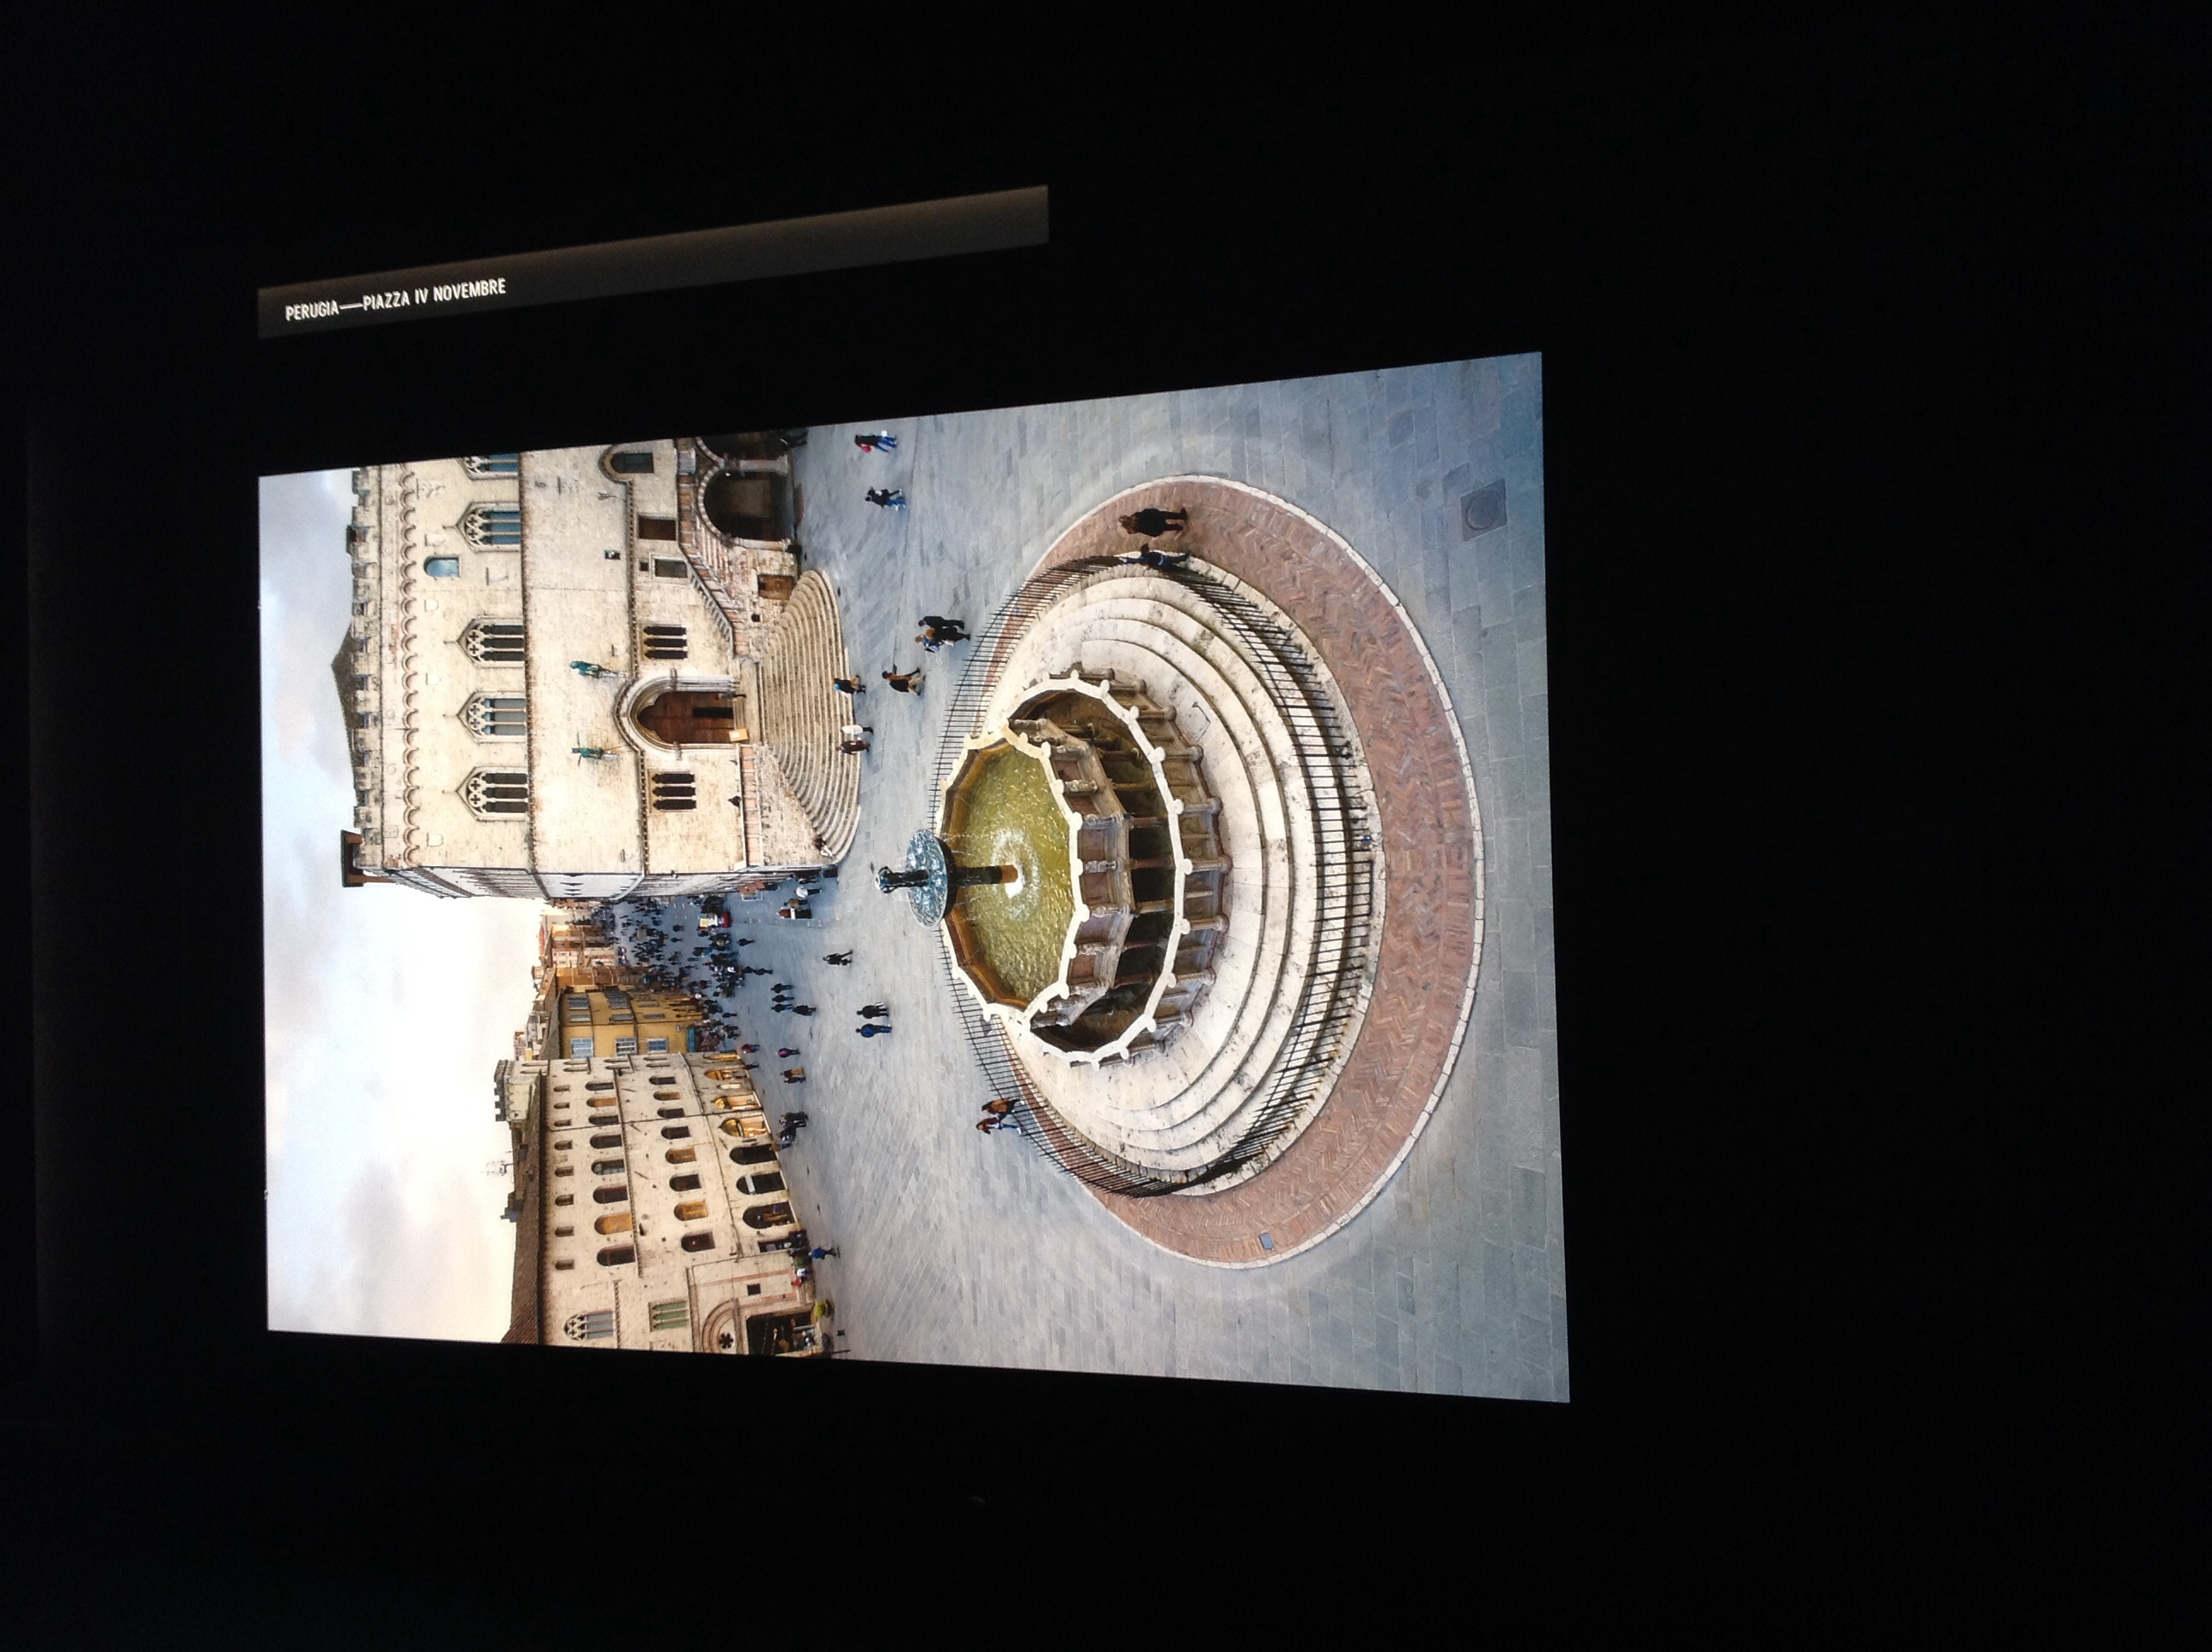 Istallazione mostra Sensational Umbria di Steve McCurry, Ex Ospedale Fatebenefratelli, Perugia